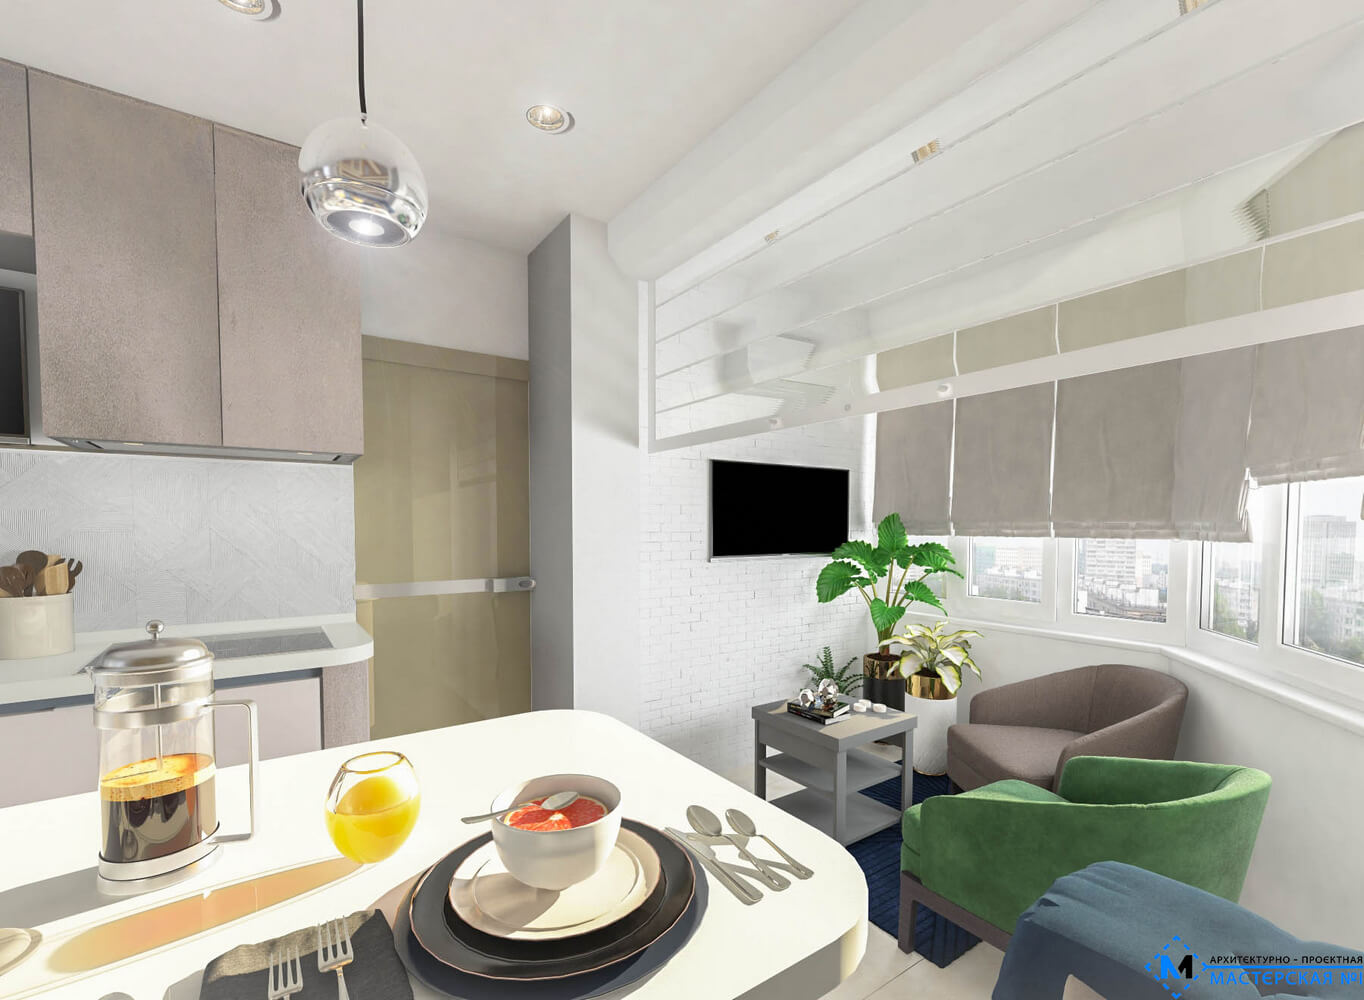 Пример дизайн-проекта, подготовленный для 3-комнатной квартиры в 2016 году